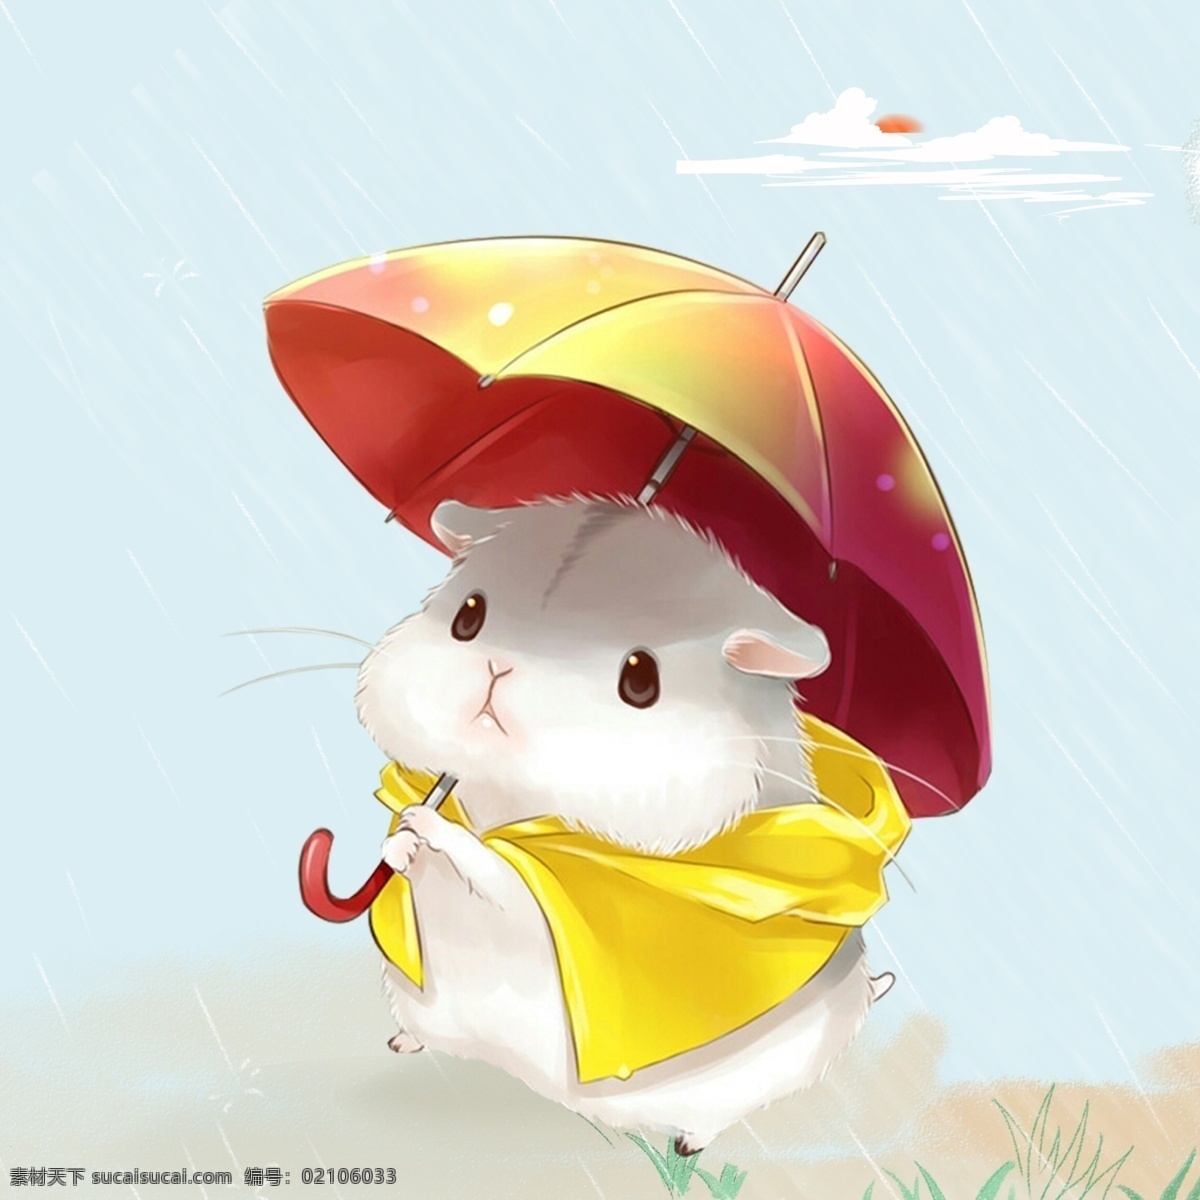 可爱小仓鼠 可爱 卡通 小仓鼠 雨天 手绘 动物 动漫动画 动漫人物